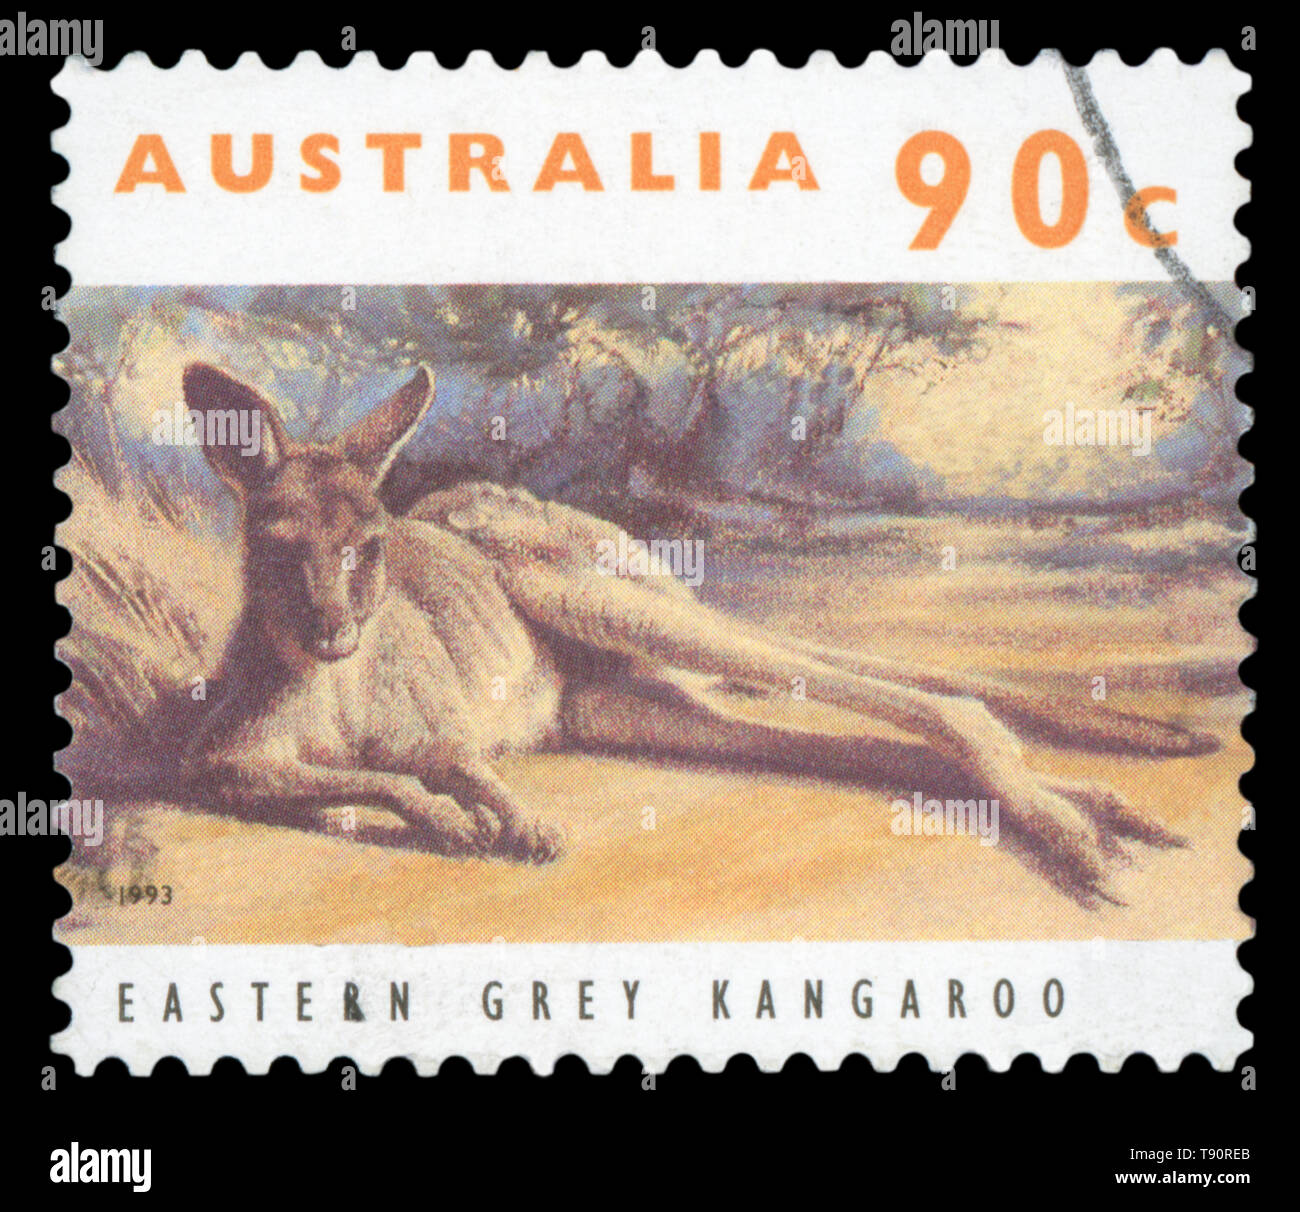 Australien - ca. 1993: Stempel in Australien mit Bild einer Eastern Grey Kangaroo, circa 1993 gedruckt. Stockfoto